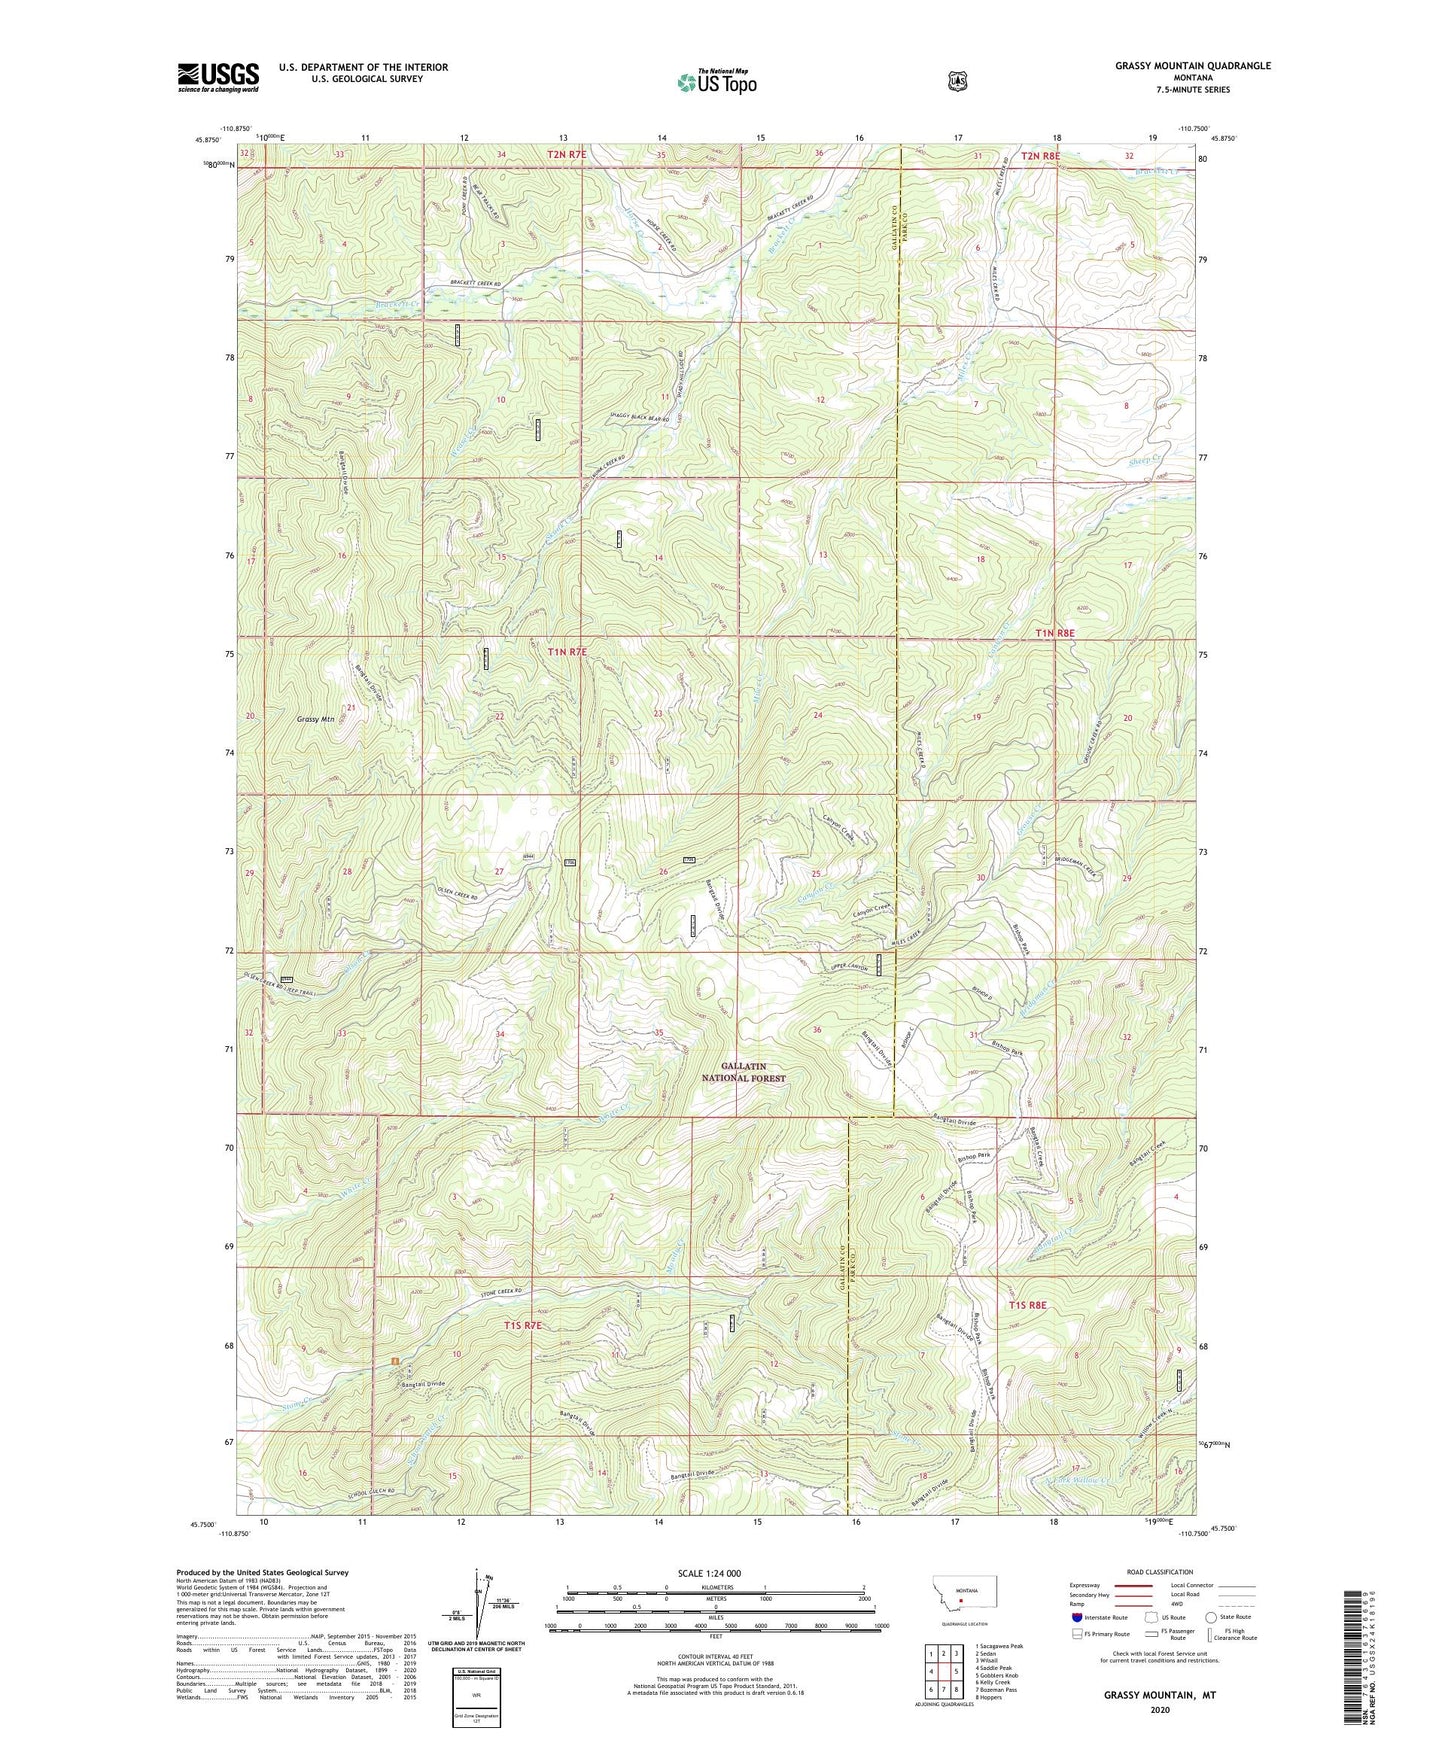 Grassy Mountain Montana US Topo Map Image